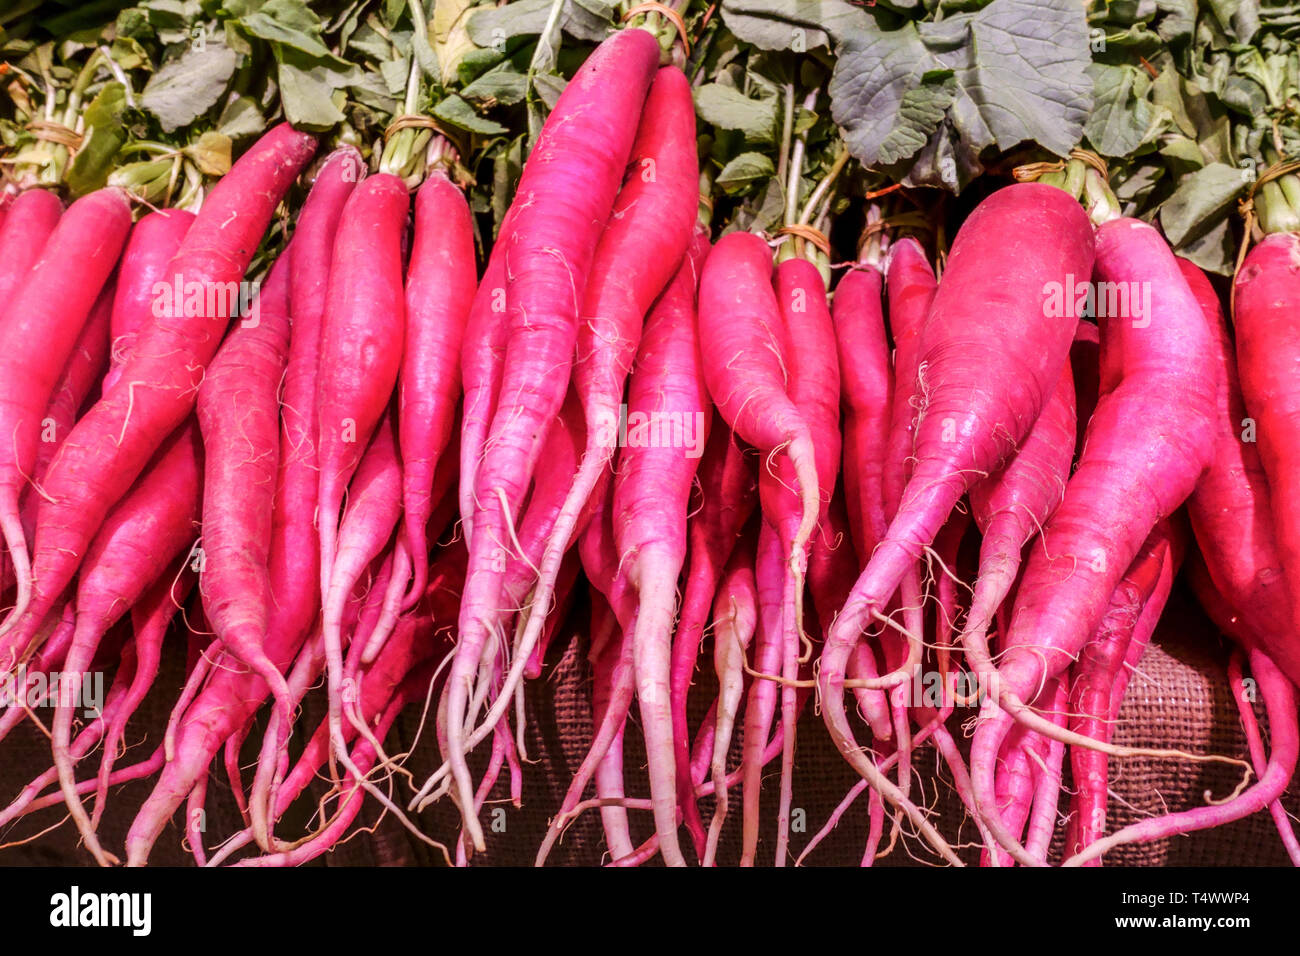 Longues radis rouges racines marché des légumes Espagne Banque D'Images